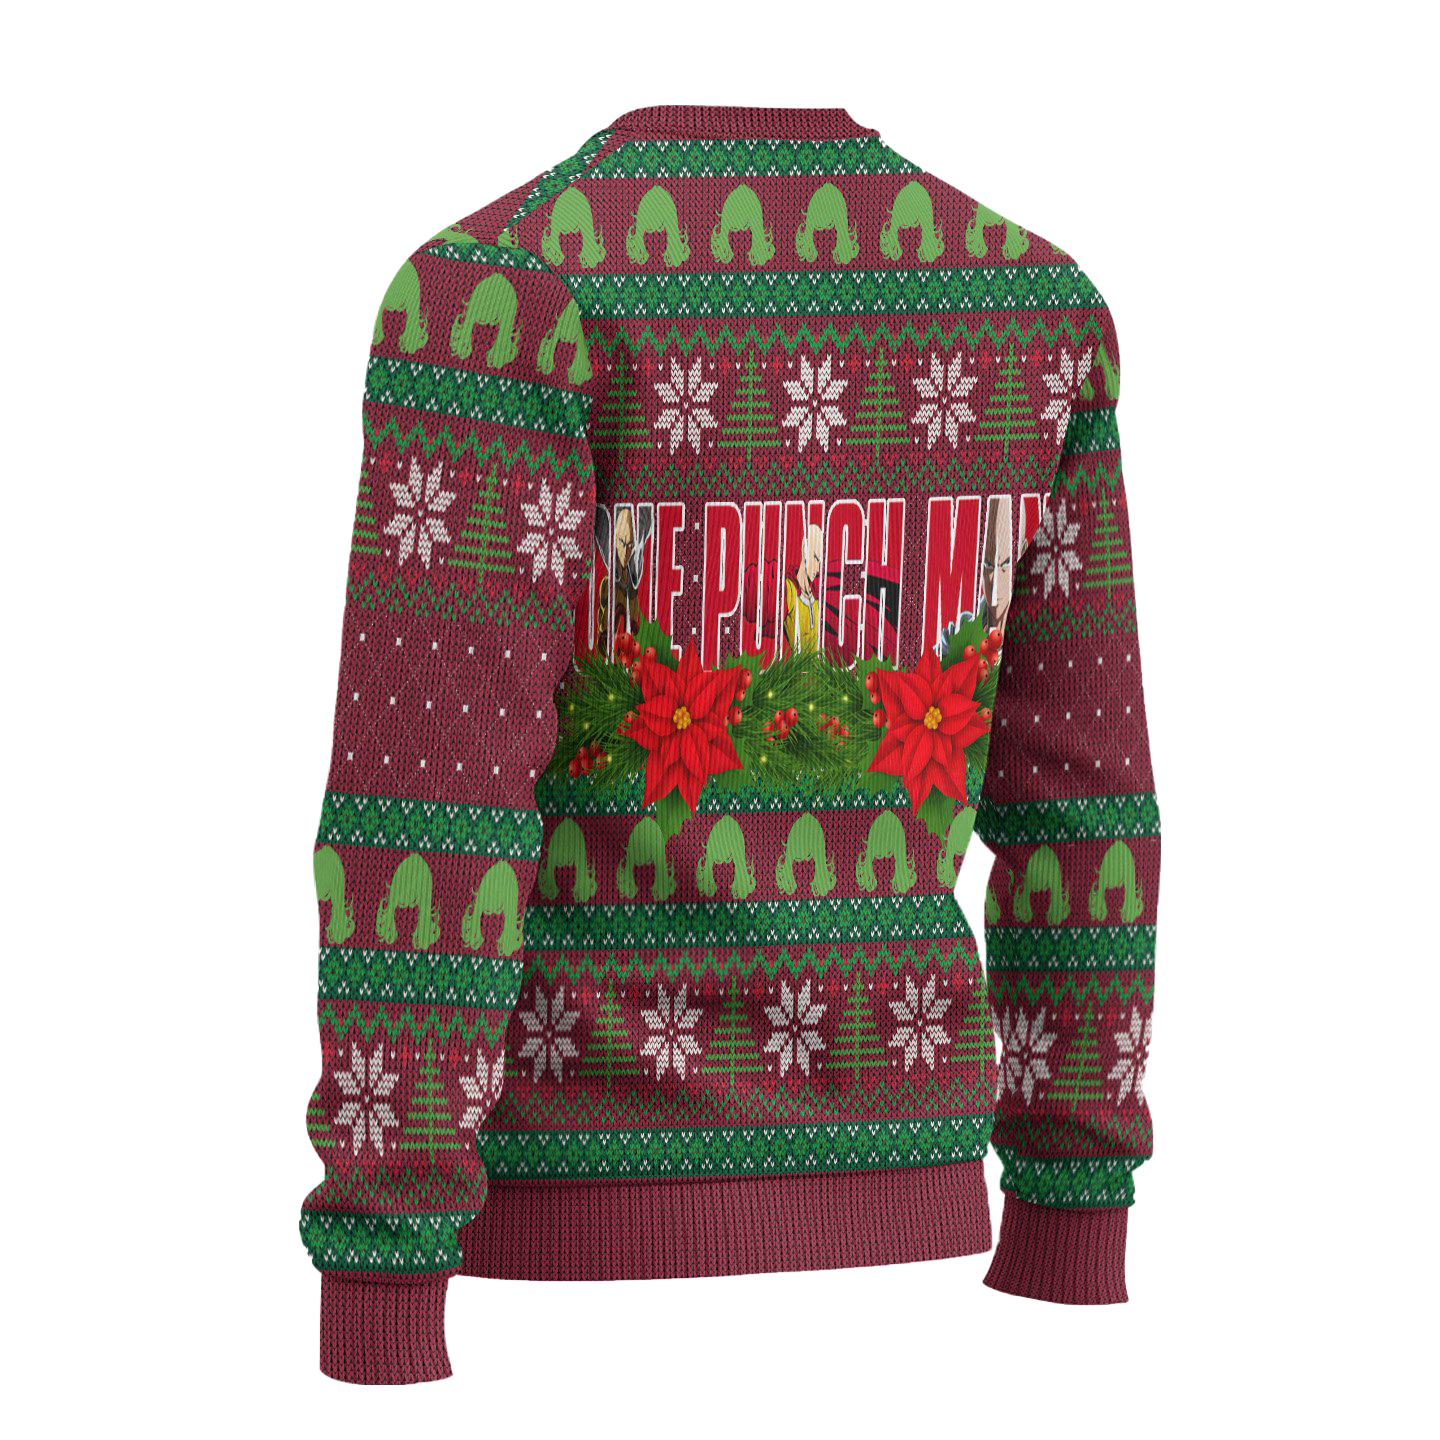 Tatsumaki x Fubuki Anime Ugly Christmas Sweater Custom One Punch Man Xmas Gift